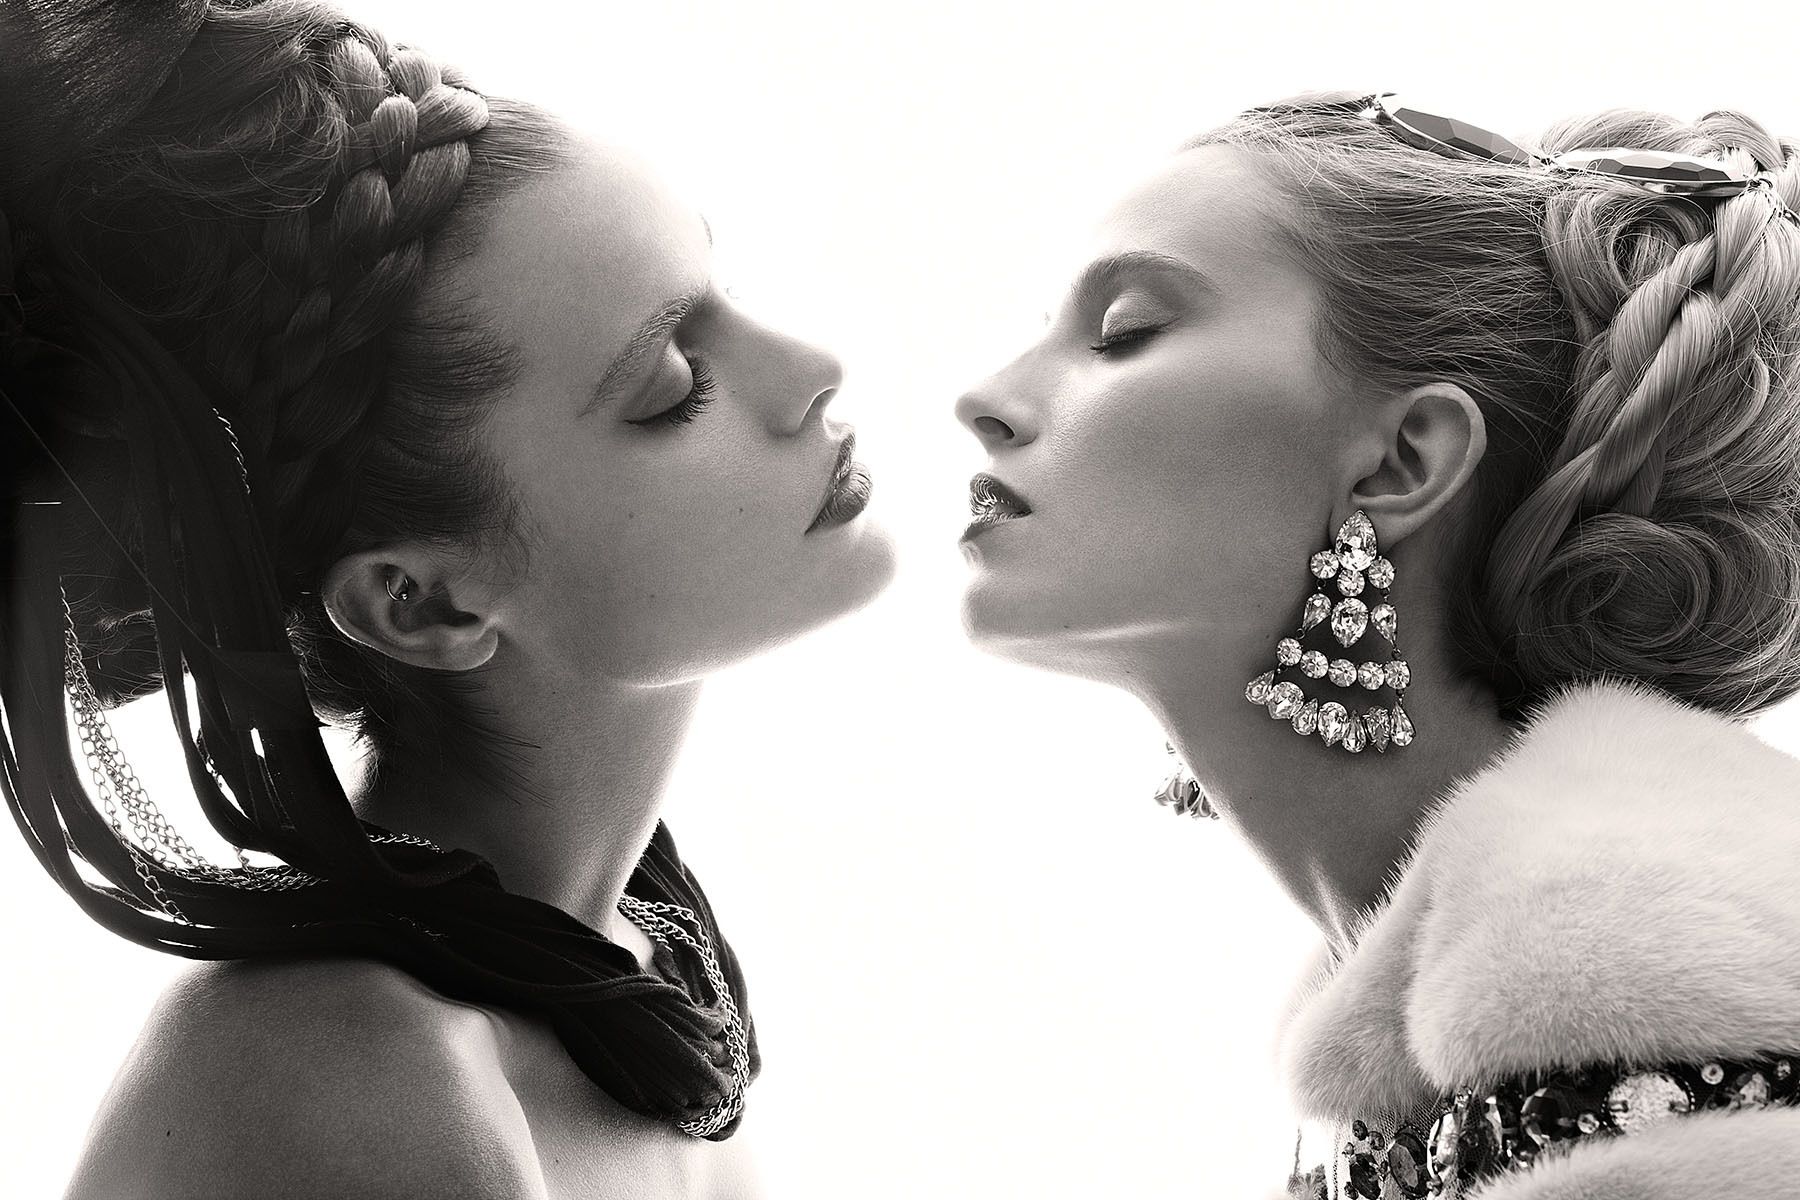 Models: Tatian Pajkovic & Tehila Rich